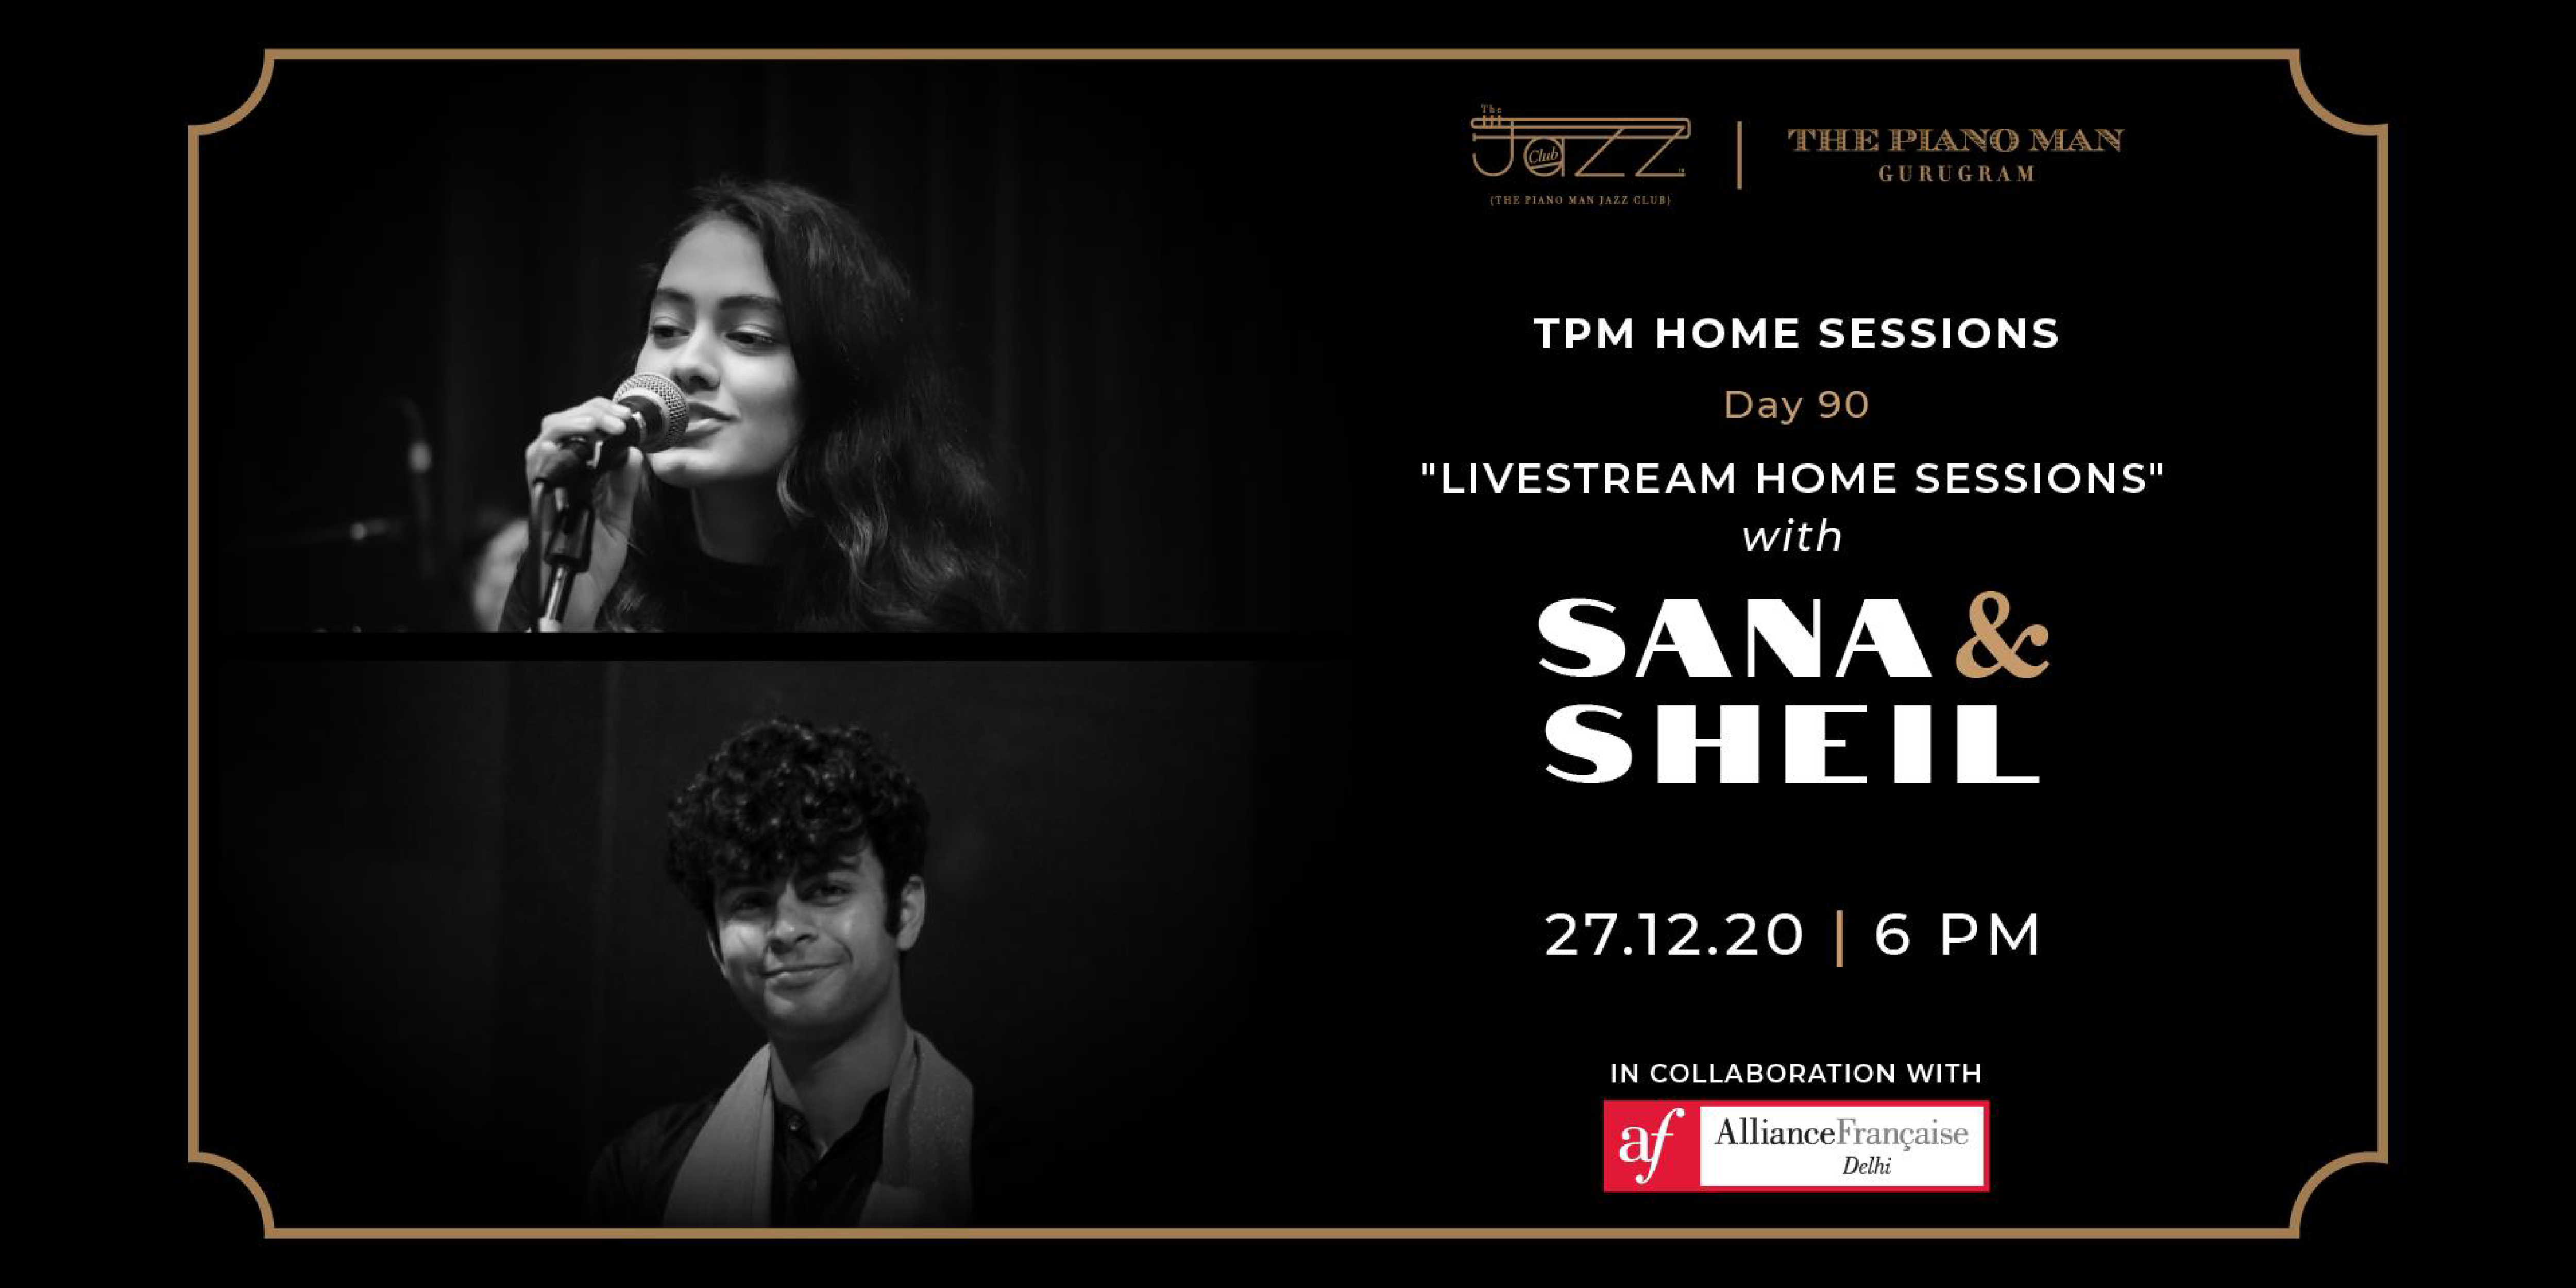 Jazz concert with Sana & Sheil